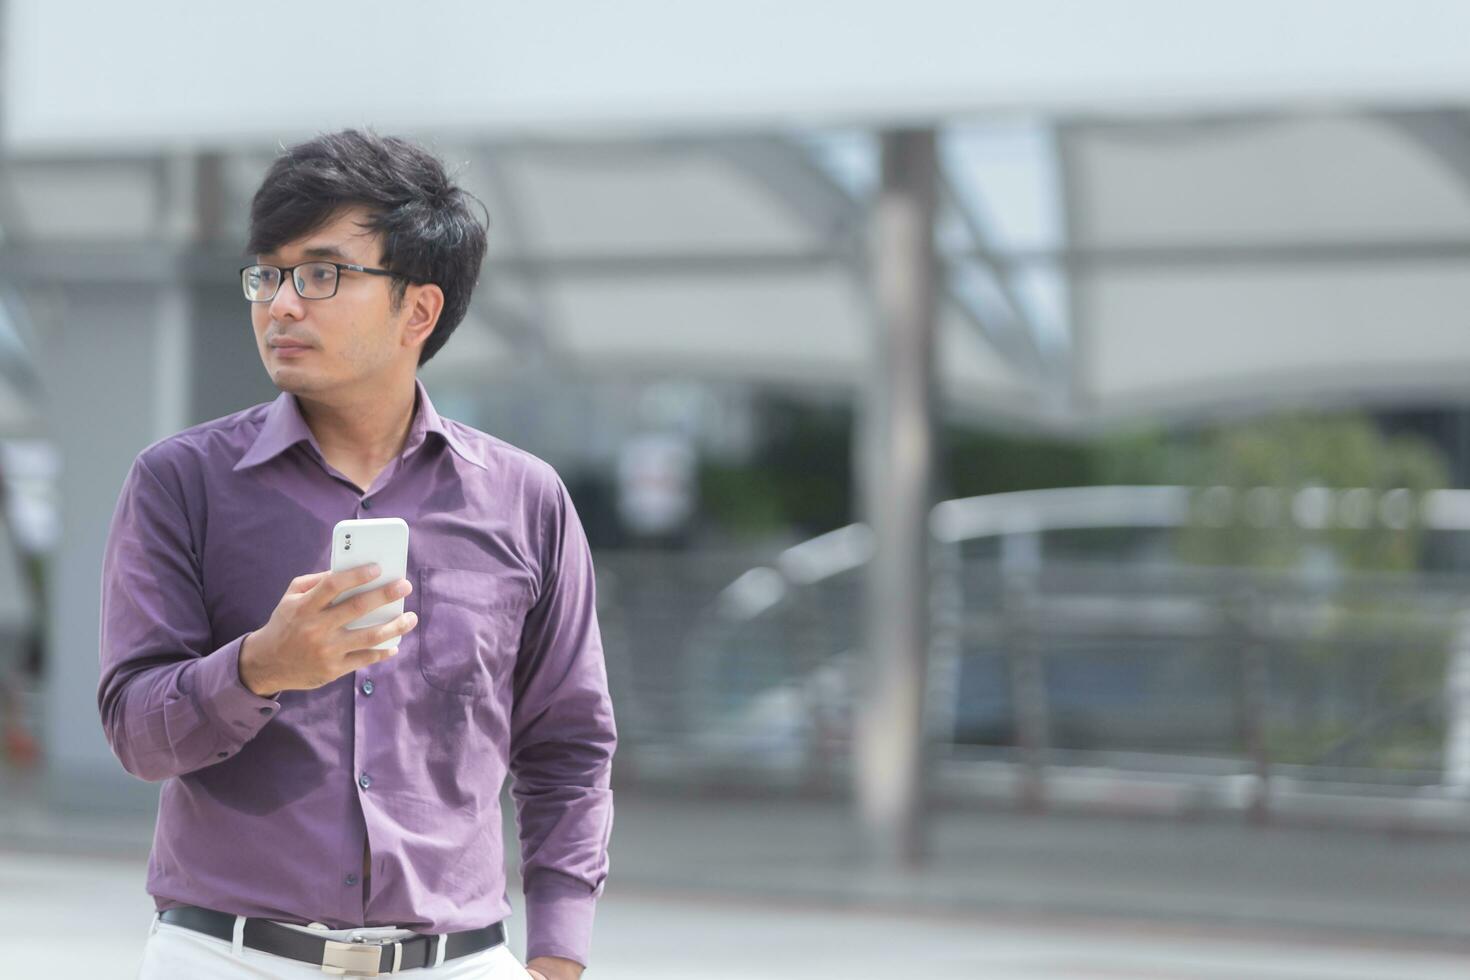 svettas ung asiatisk affärsman ser på meddelanden på mobiltelefon medan gående i de gata. foto